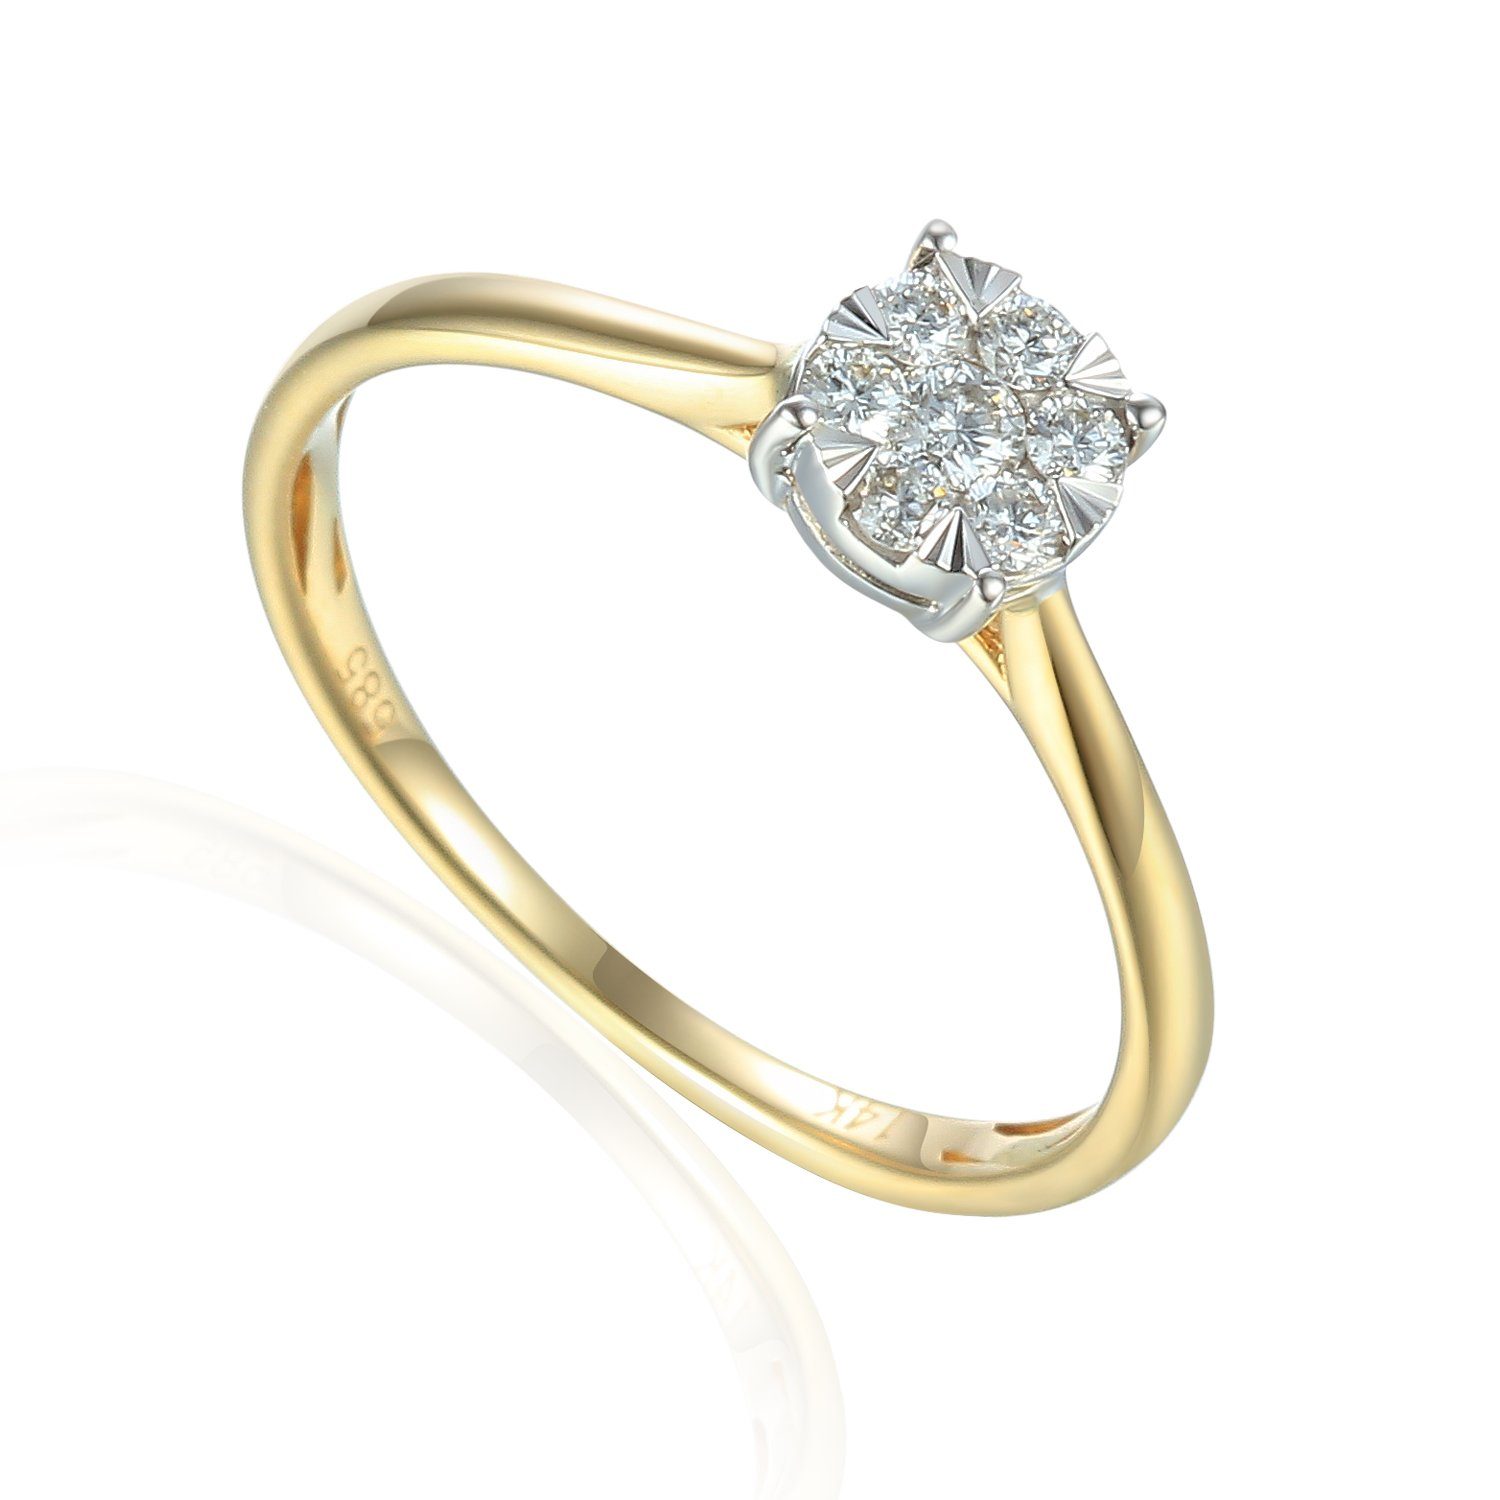 Stella-Jewellery Solitärring 585er Gelbgold Solitärring Diamant 0,18 ct Gr.54 (inkl. Etui), mit Brillant 0,05ct. - Poliert